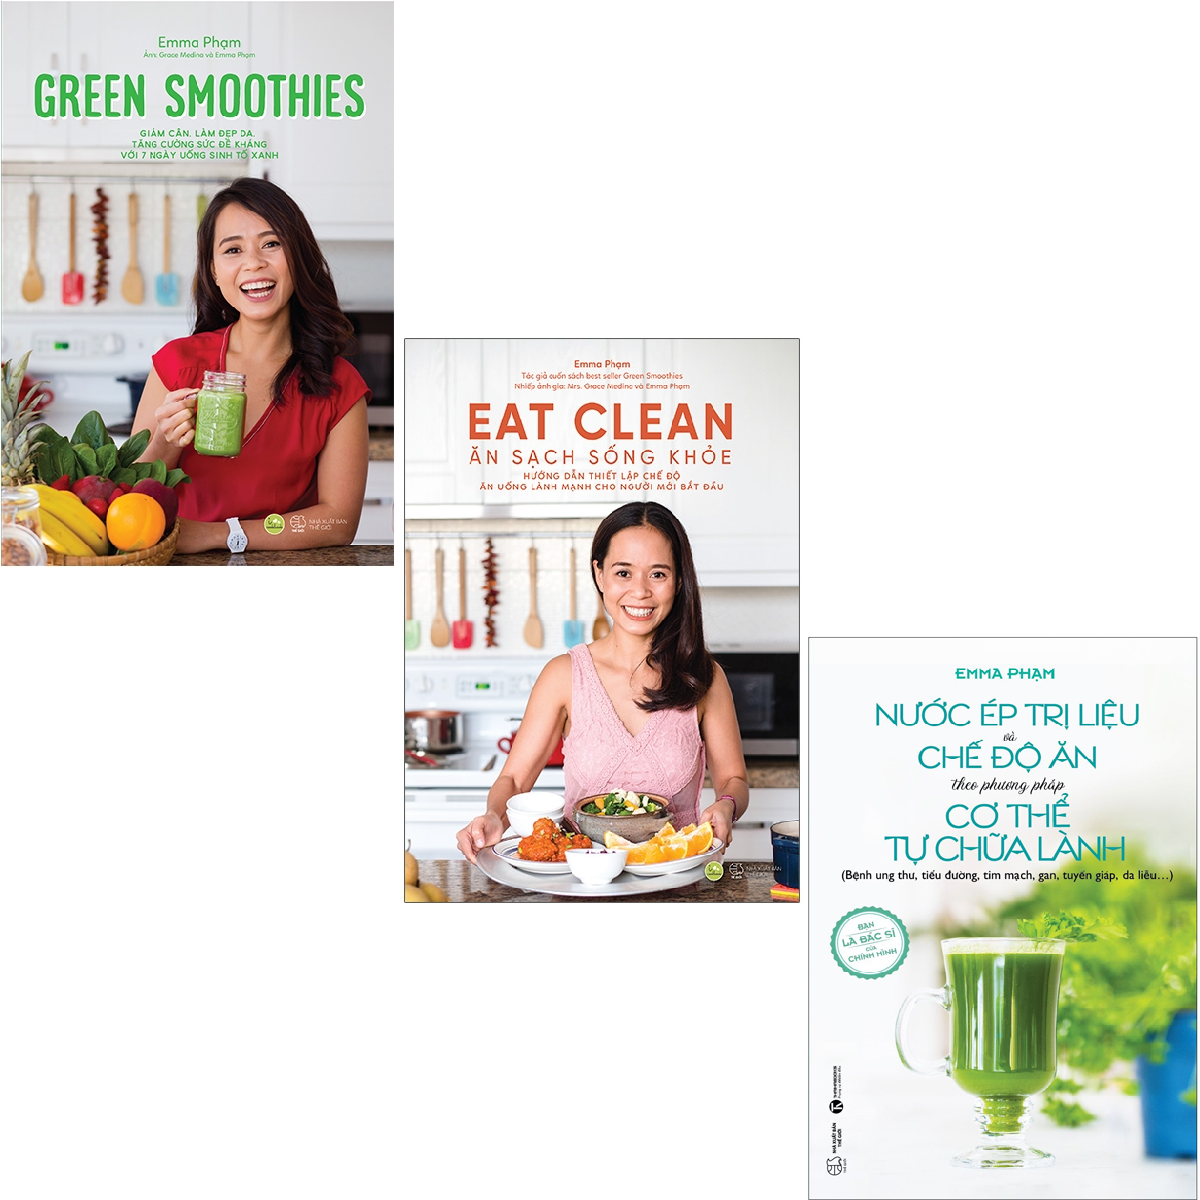 Sách AZ - Combo Green Smoothies + Eat Clean - Ăn Sạch Sống Khỏe + Nước Ép Trị Liệu Và Chế Độ Ăn Theo Phương Pháp Cơ Thể Tự Chữa Lành (3 cuốn)